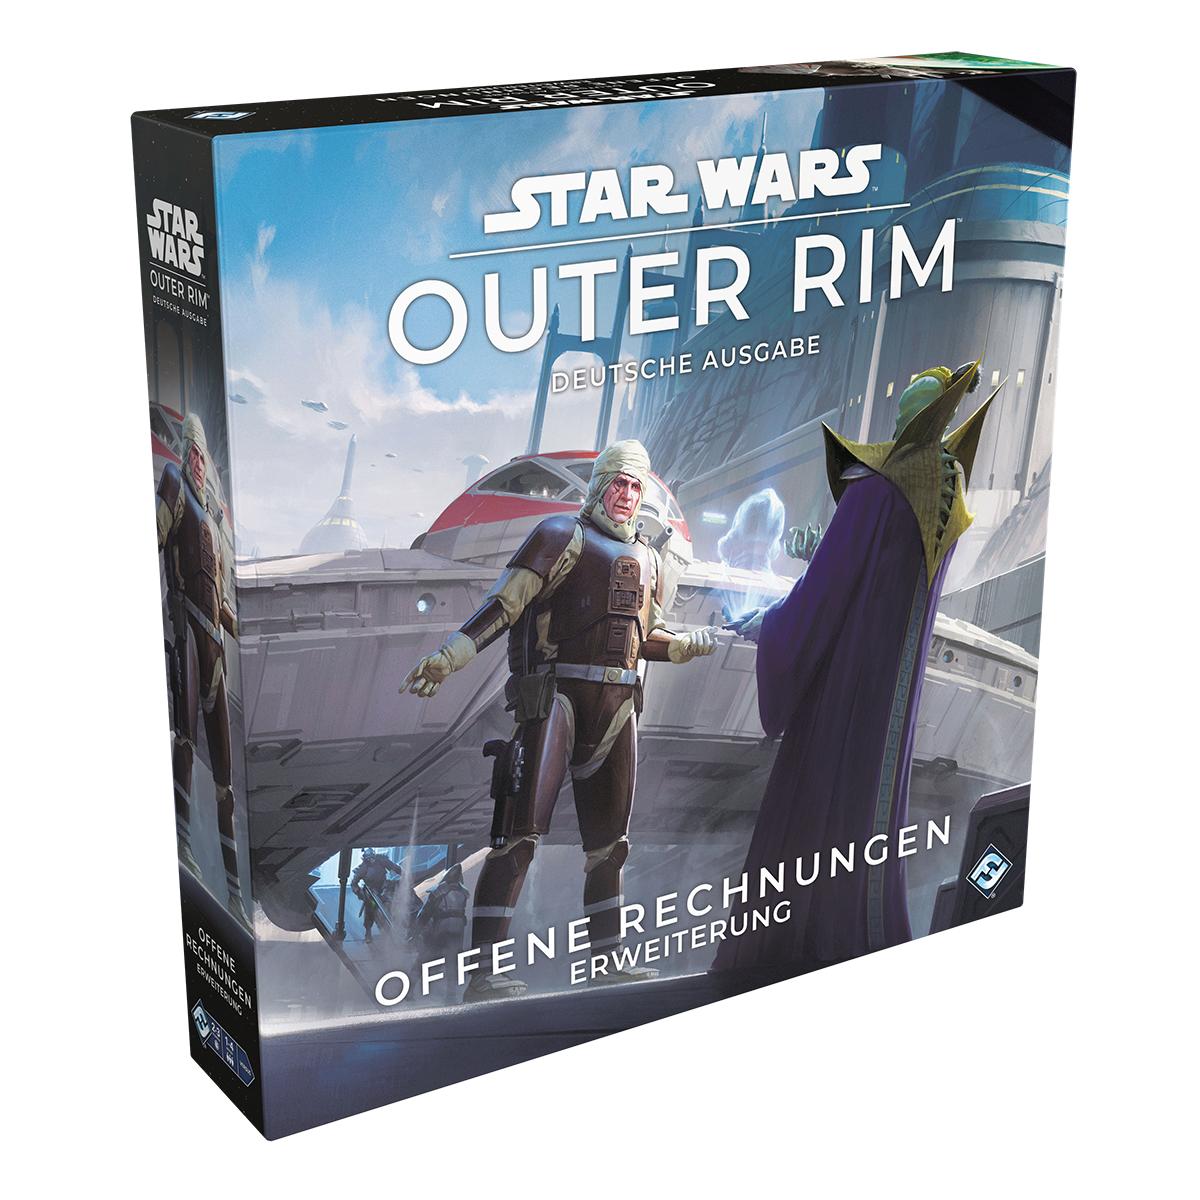 Star Wars - Outer Rim - Erweiterung: Offene Rechnungen